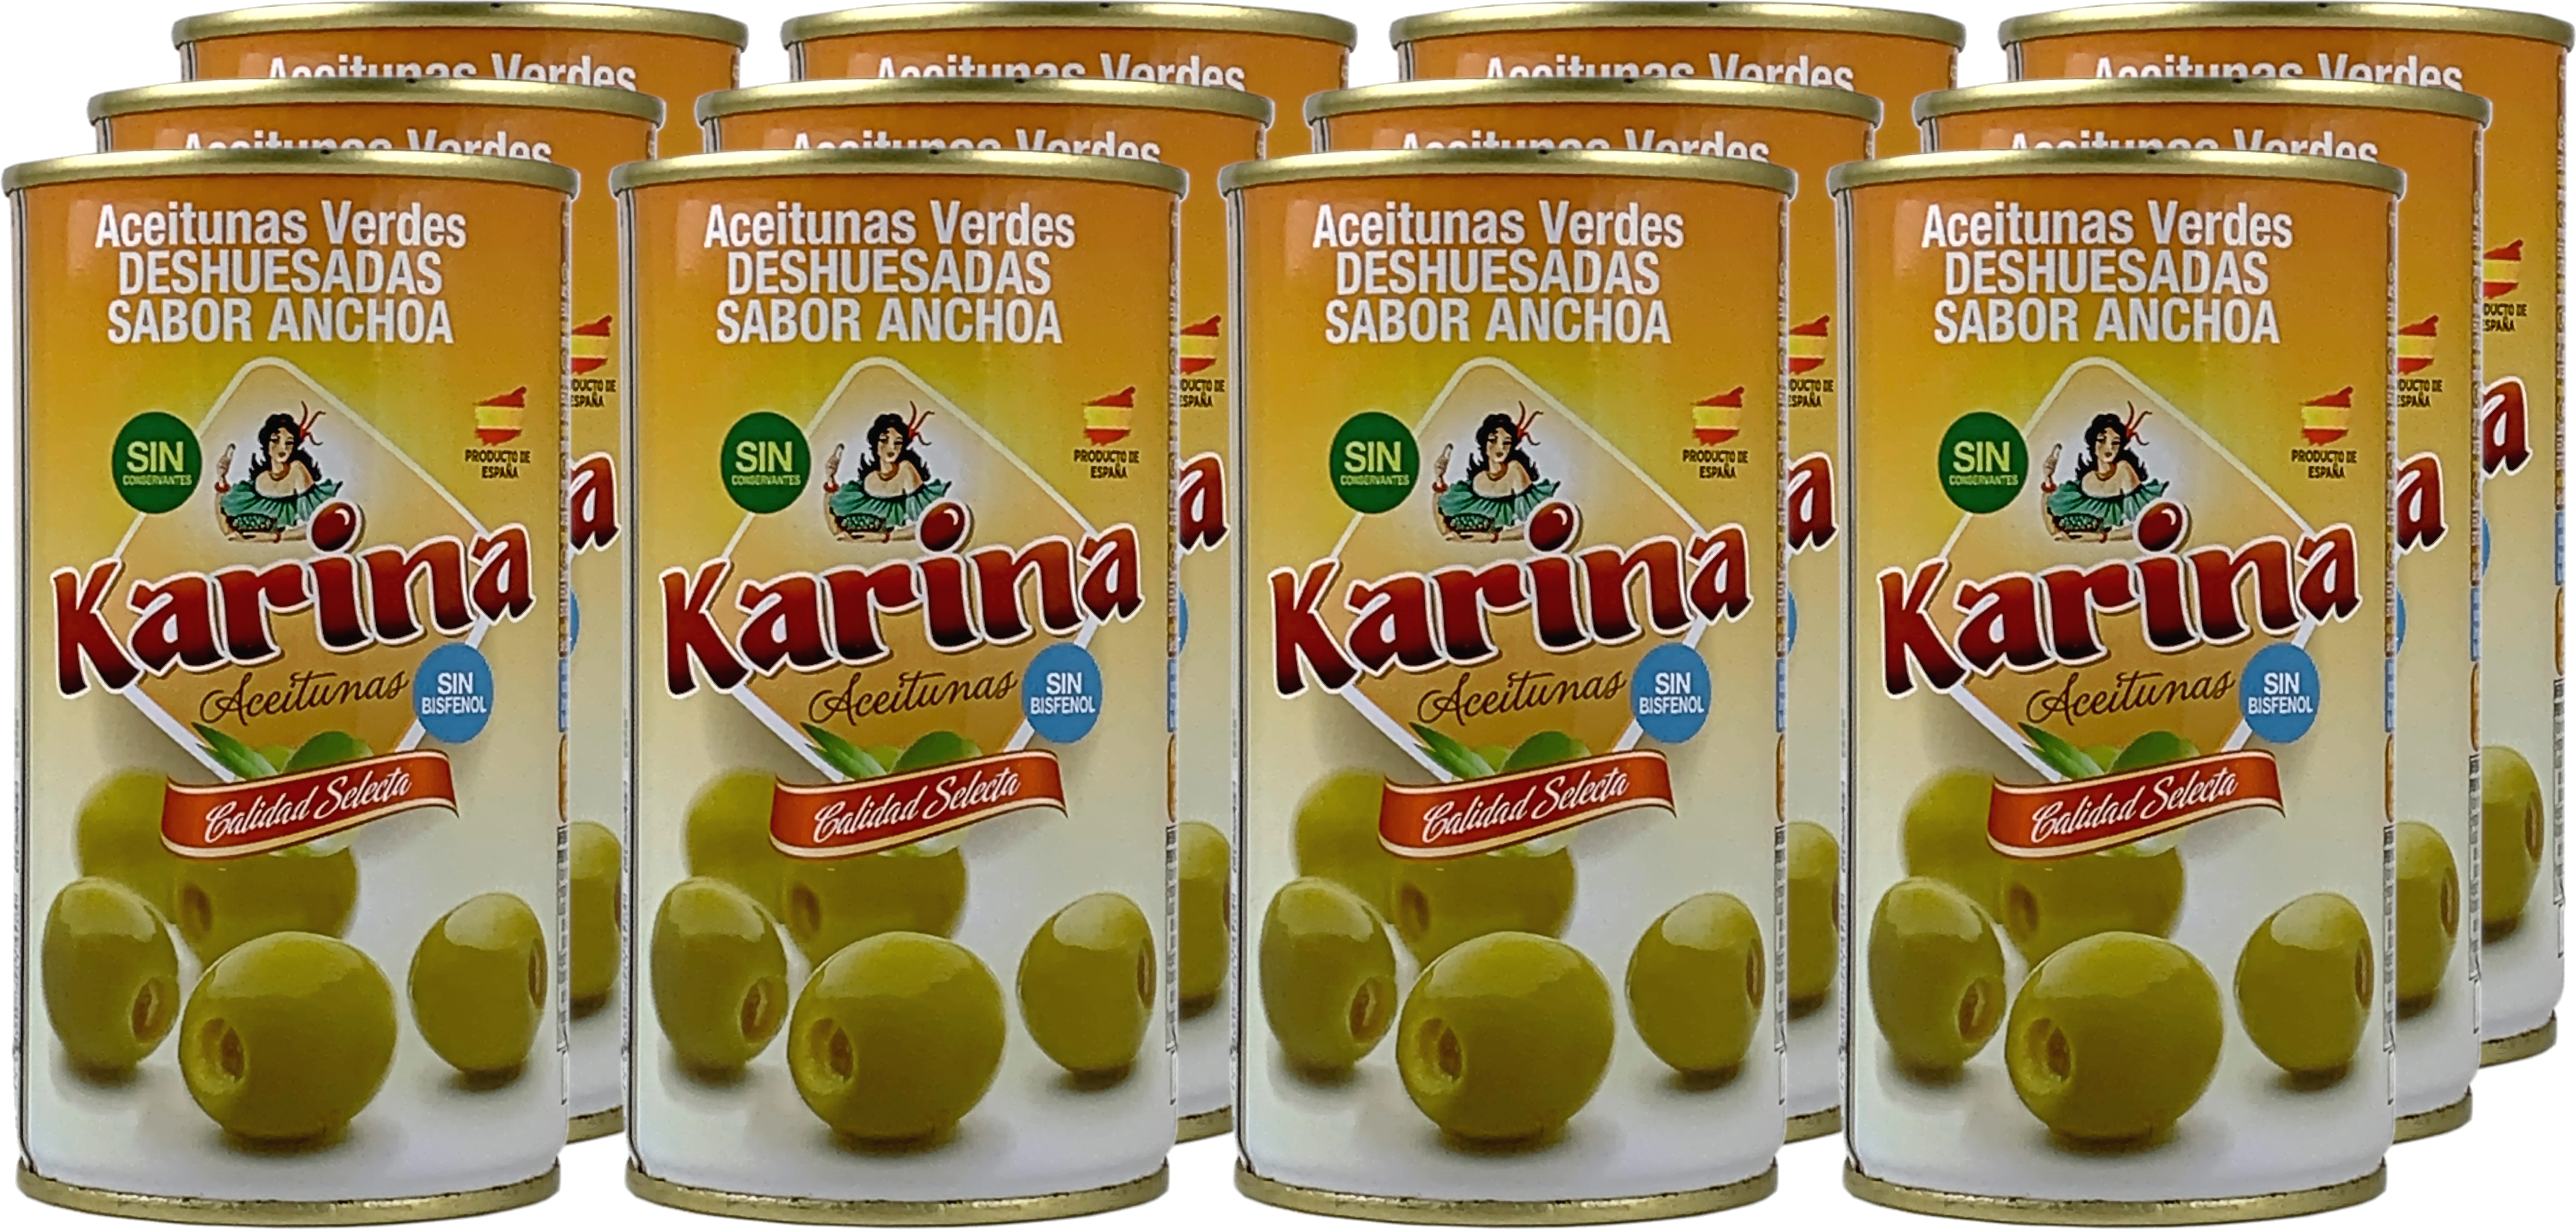 Karina Grüne Manzanilla - Oliven ohne Stein - im Dutzend günstiger!